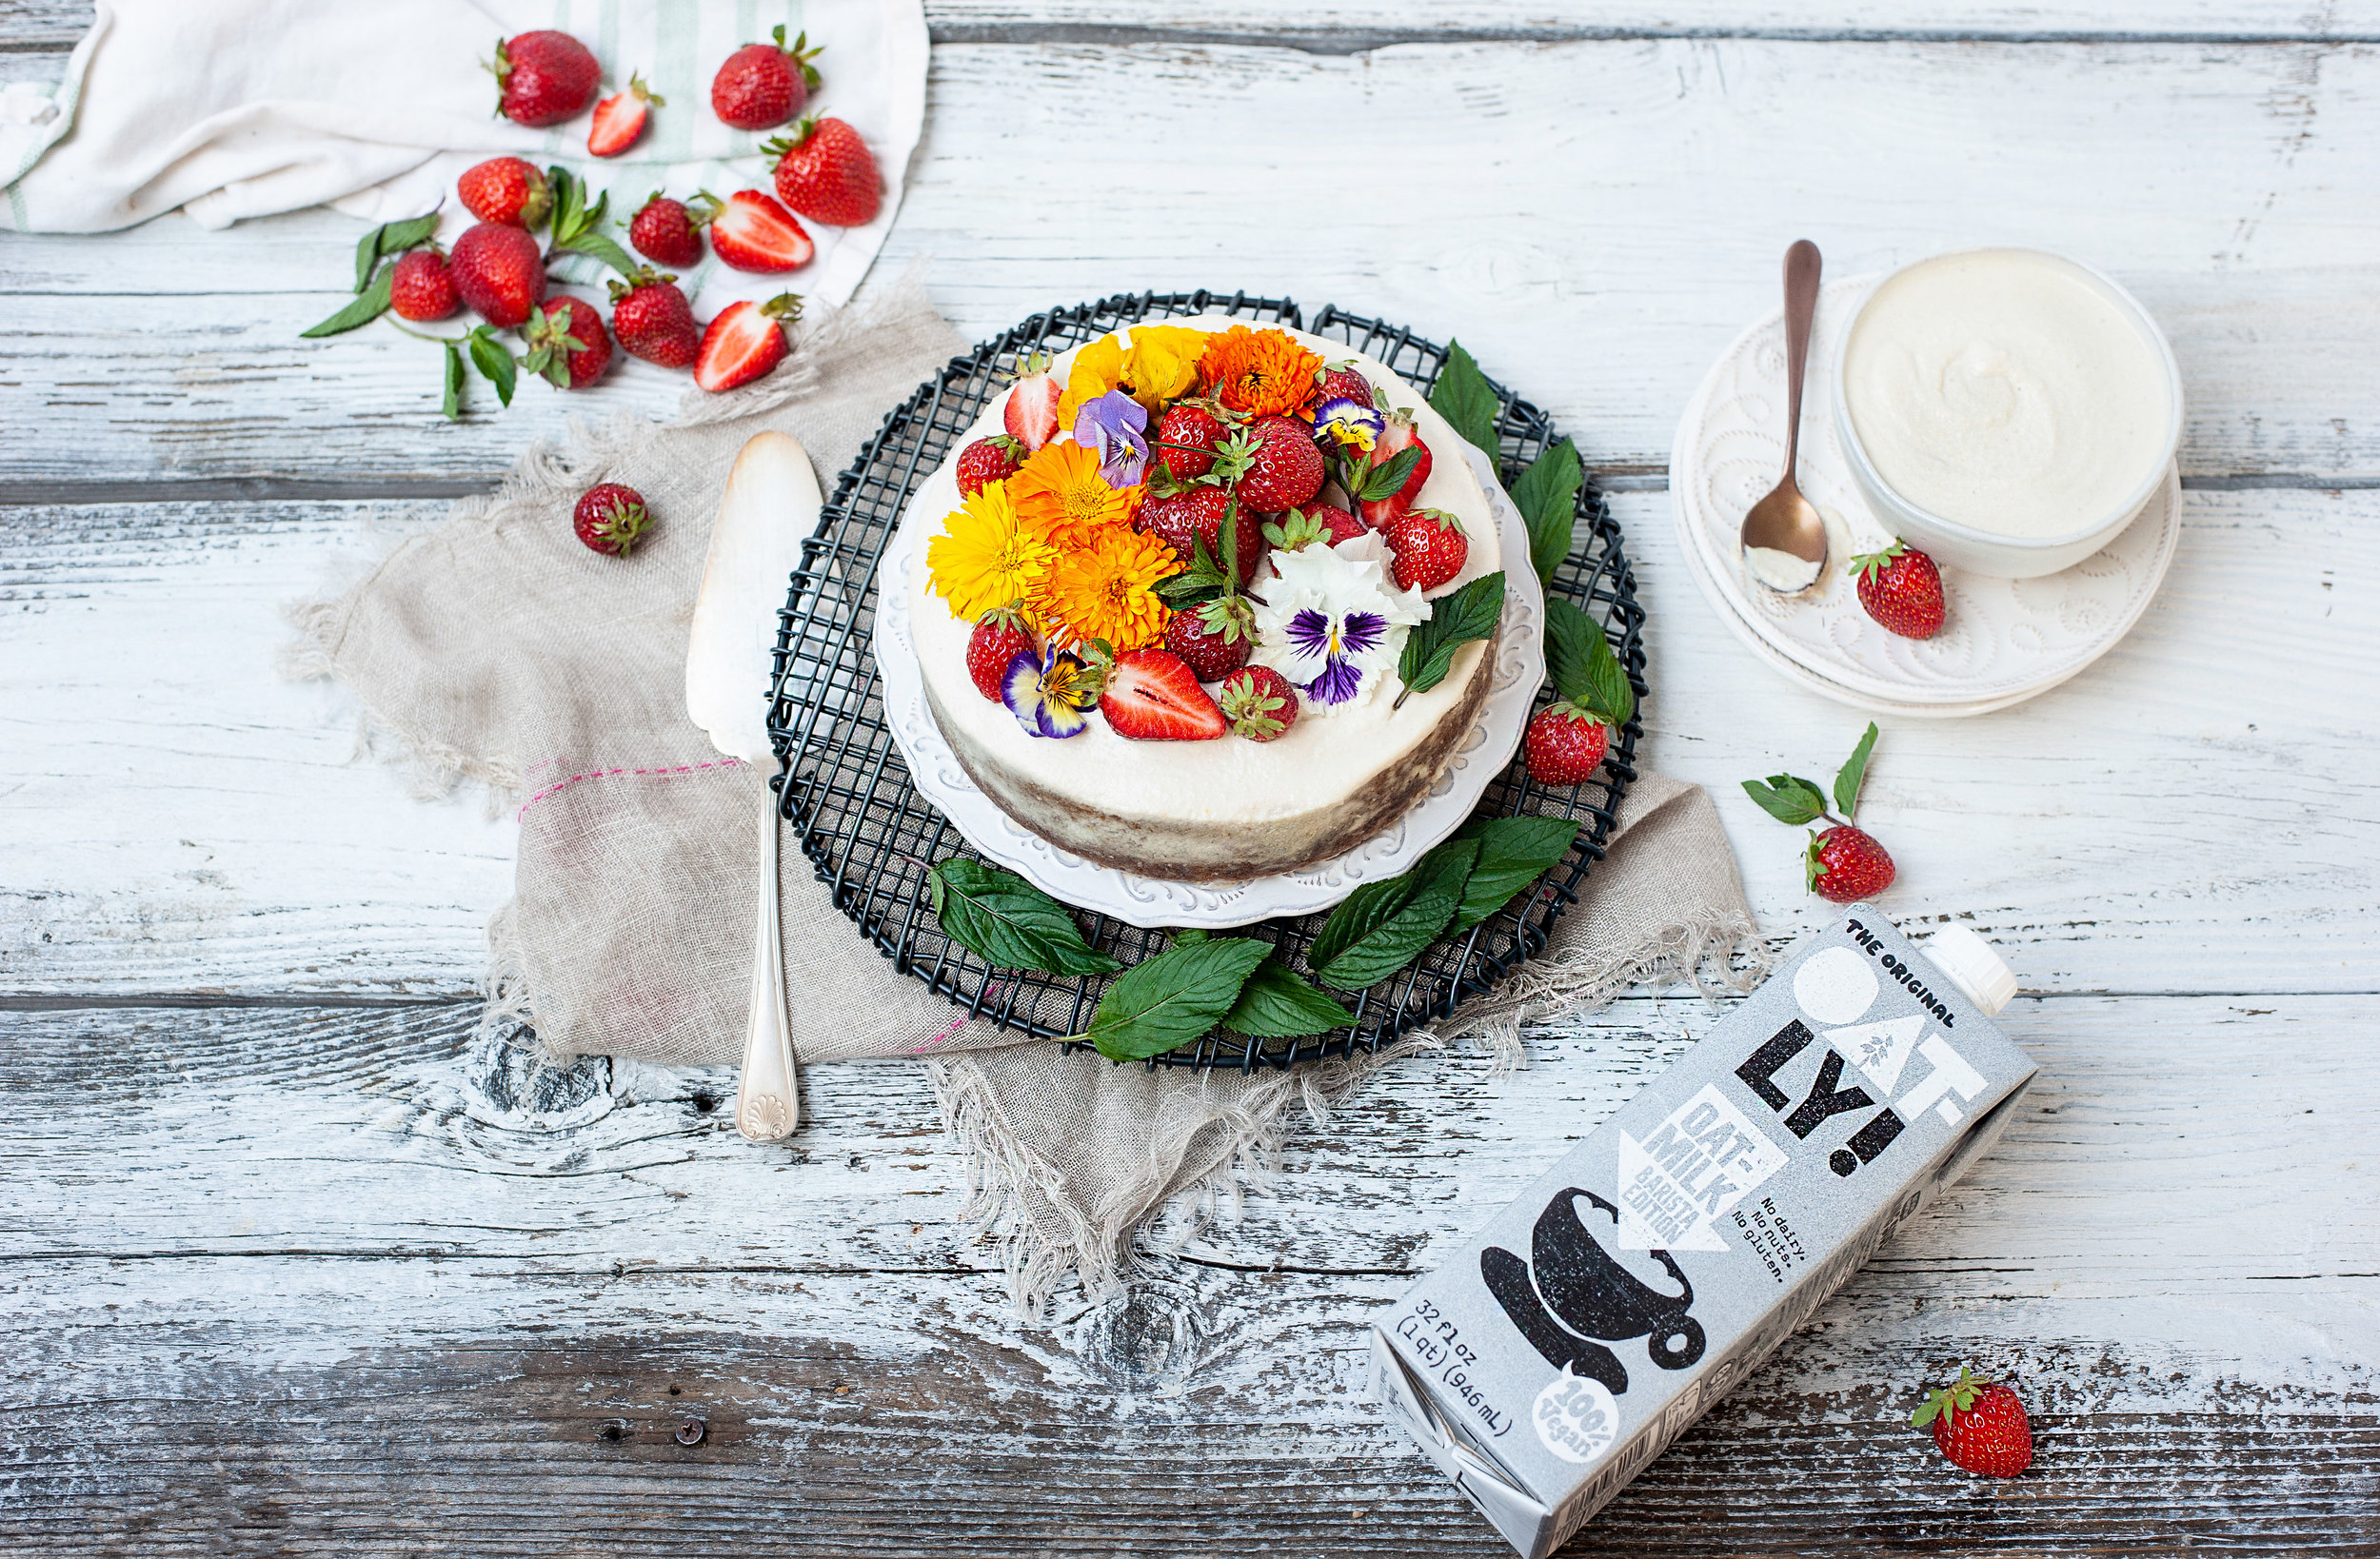 OATLY-Carrot-Cake-Flowers-Strawberries-2.jpg